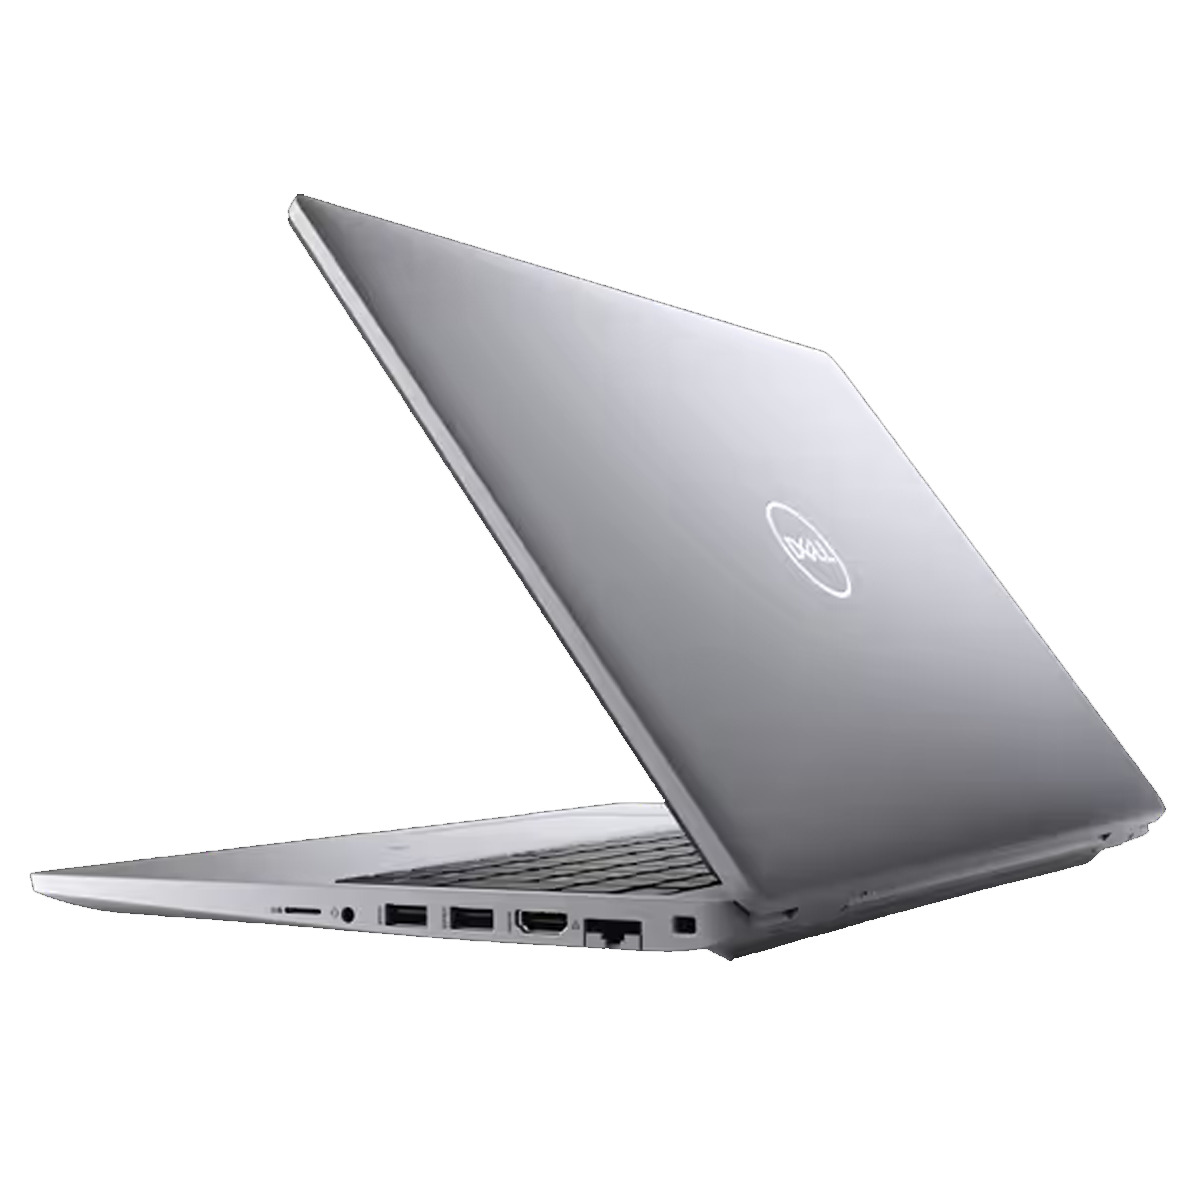 Dell Precision 3560: Wydajność i mobilność w jednym Szukasz laptopa, który poradzi sobie z wymagającymi zadaniami, a jednocześnie będzie lekki i poręczny? Dell Precision 3560 to idealny wybór dla profesjonalistów, którzy potrzebują wydajnego narzędzia pracy w podróży.